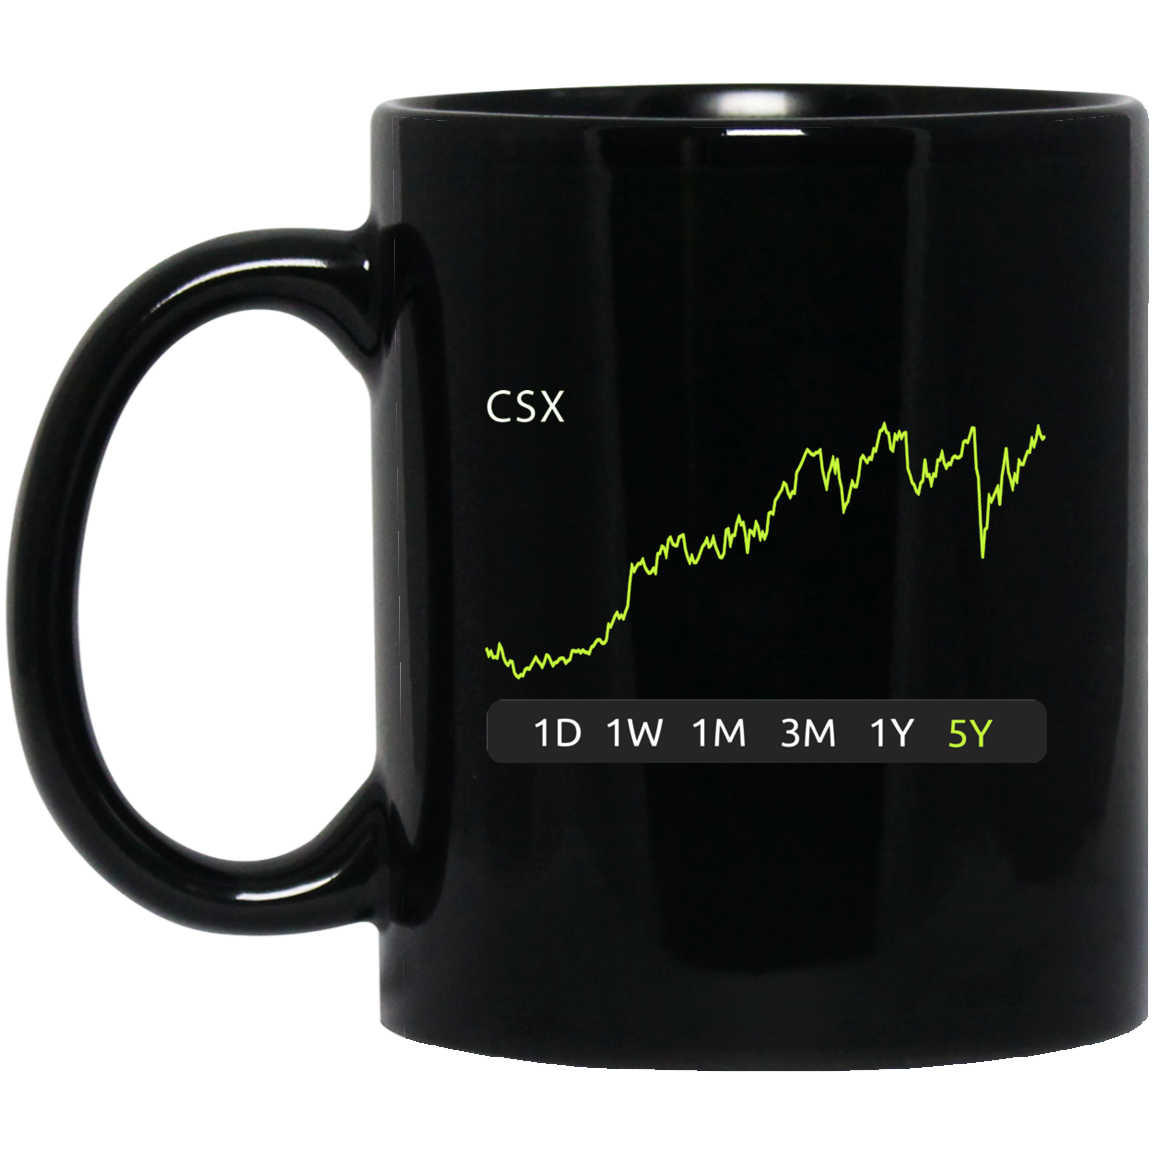 CSX Stock 5y Mug